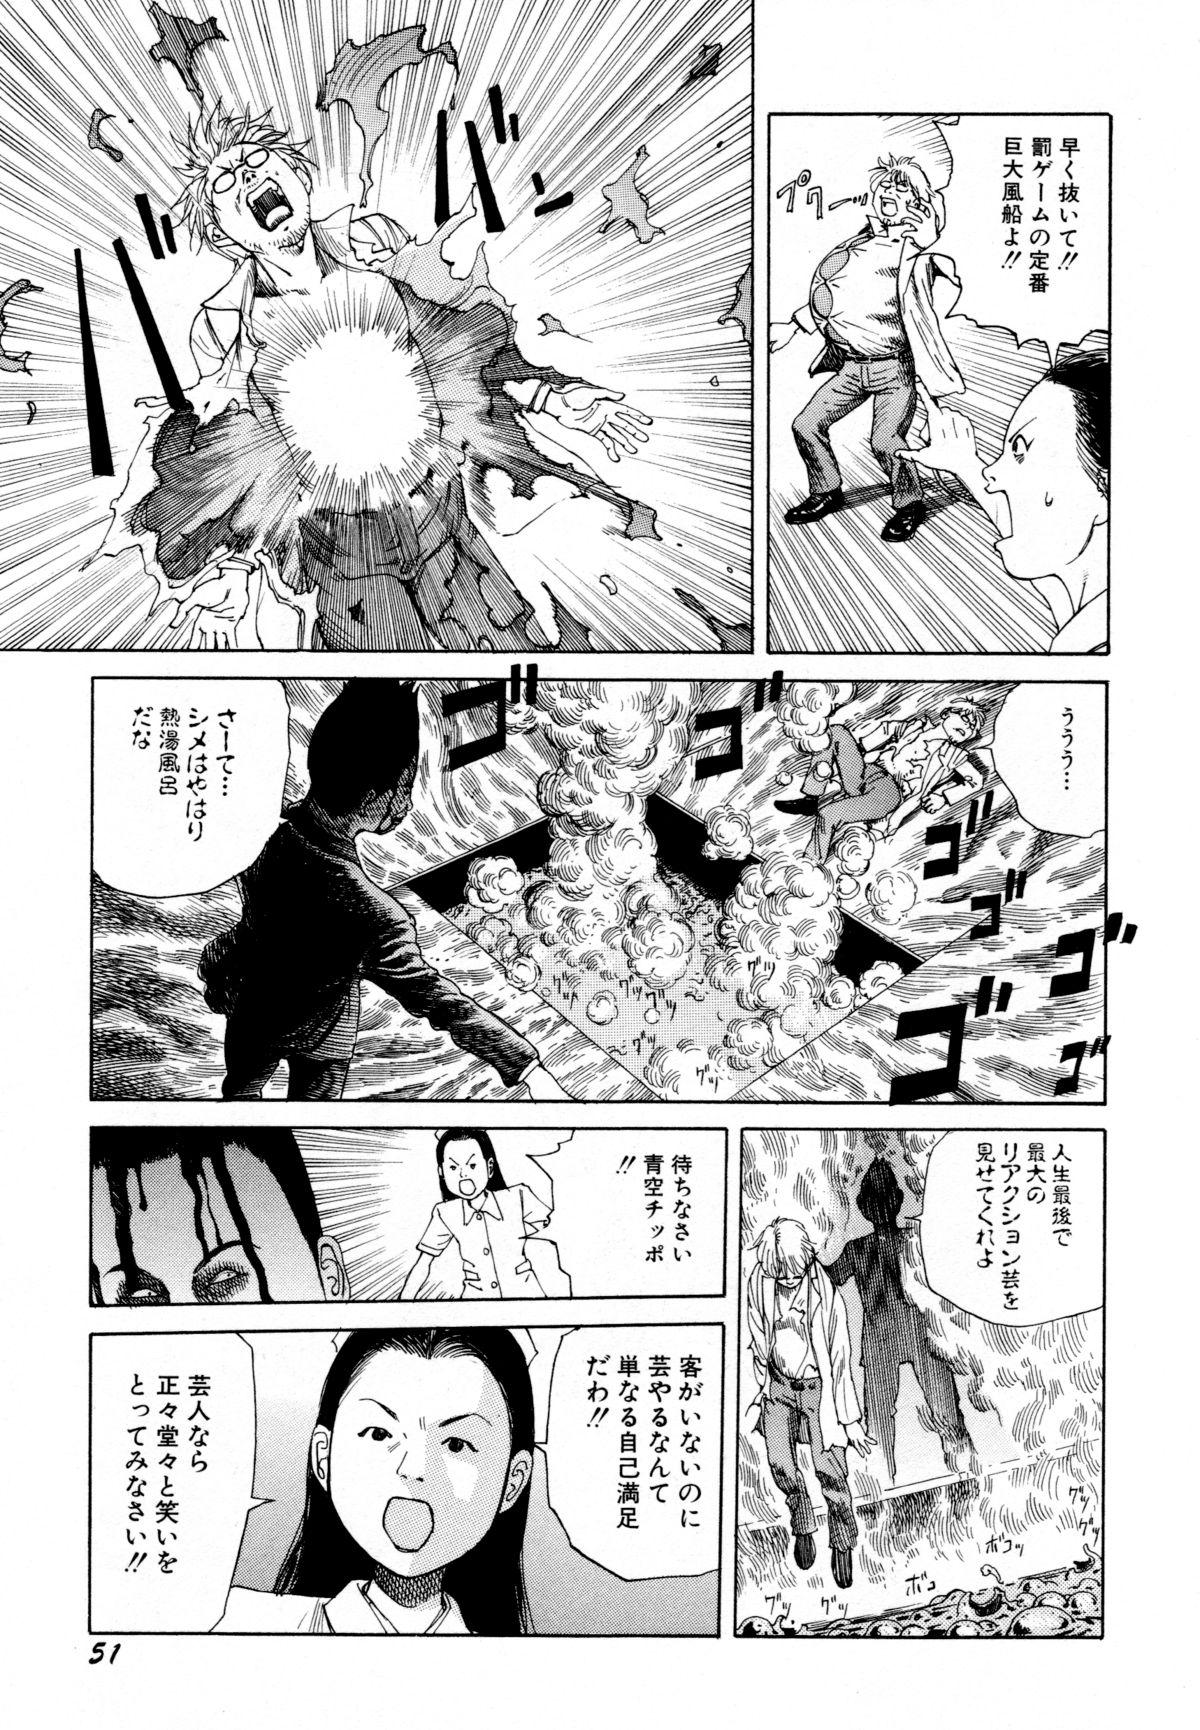 Arijigoku vs Barabara Shoujo - Antlion vs BaraBara Girl 52